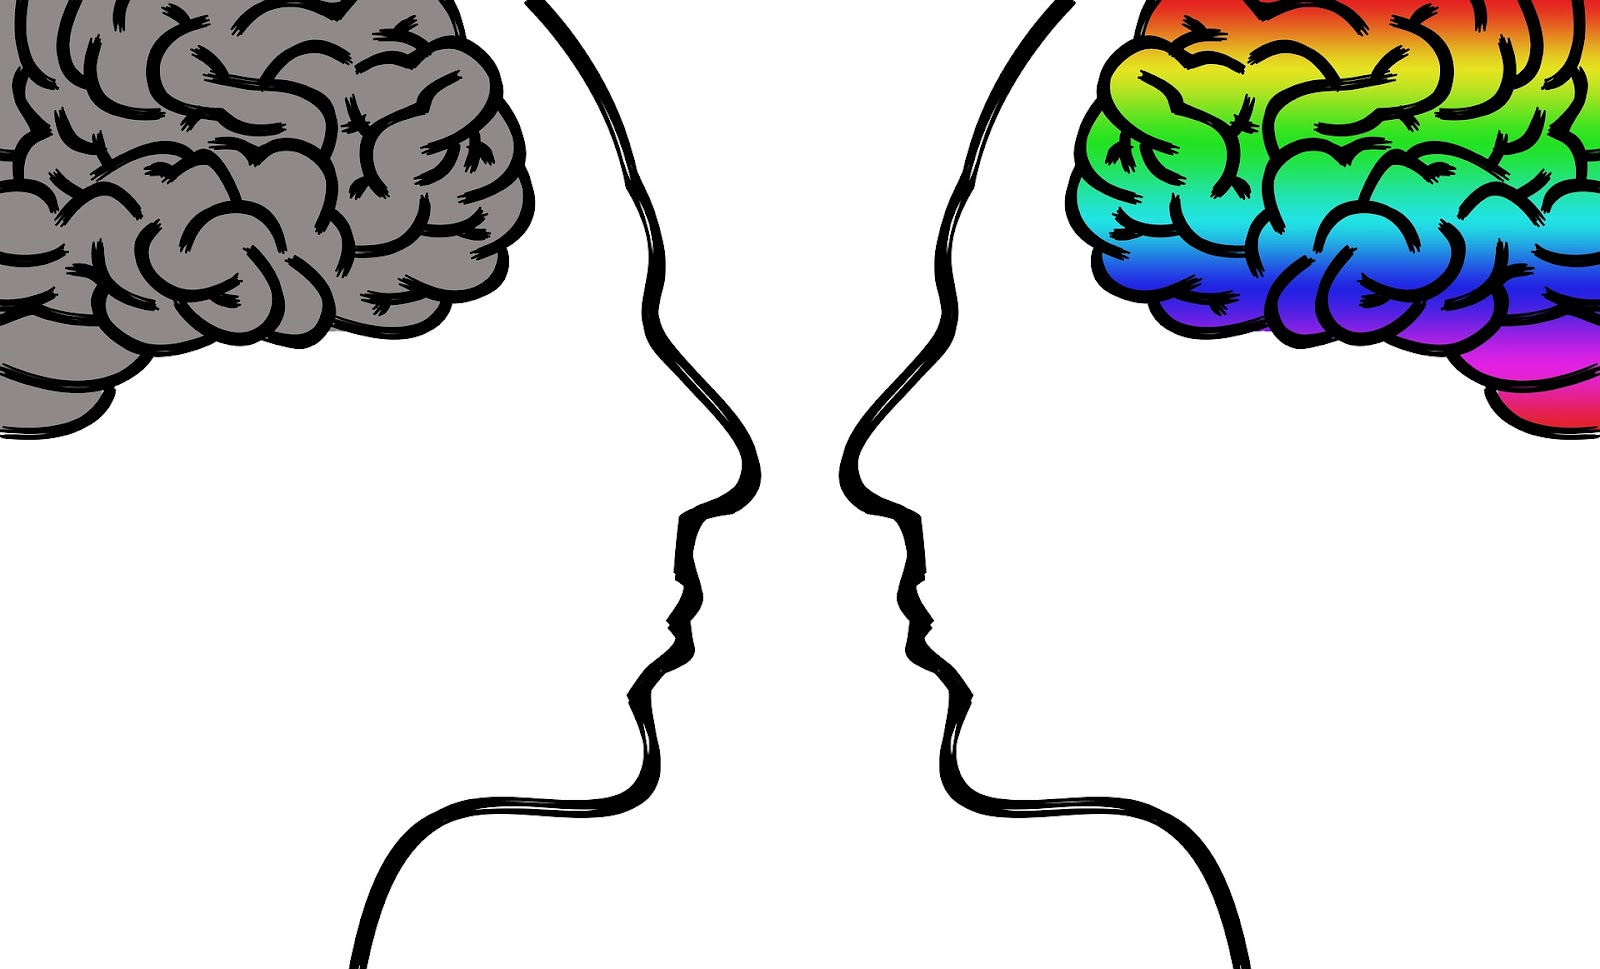 Unhappy brain vs. a happy brain. 